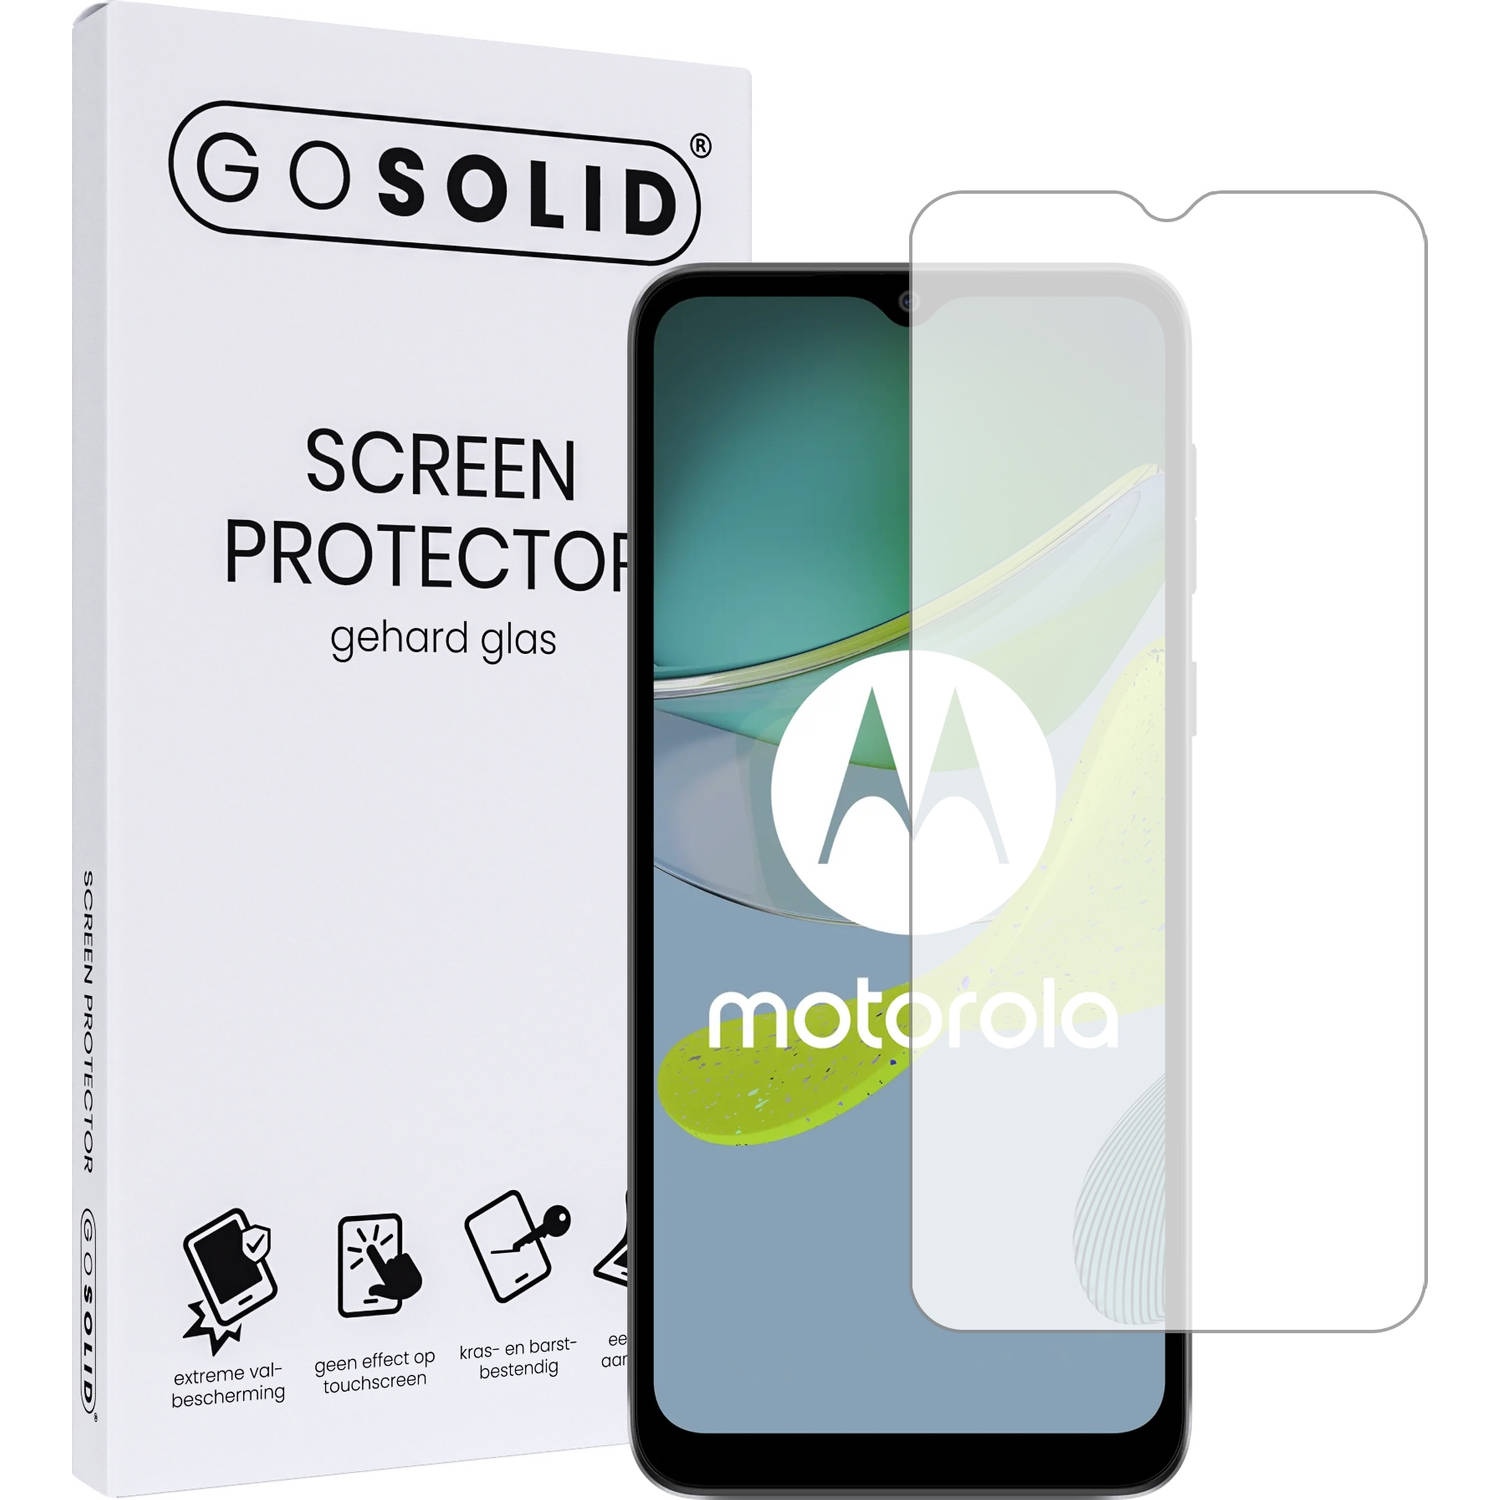 GO SOLID! Screenprotector geschikt voor Motorola moto E22i gehard glas